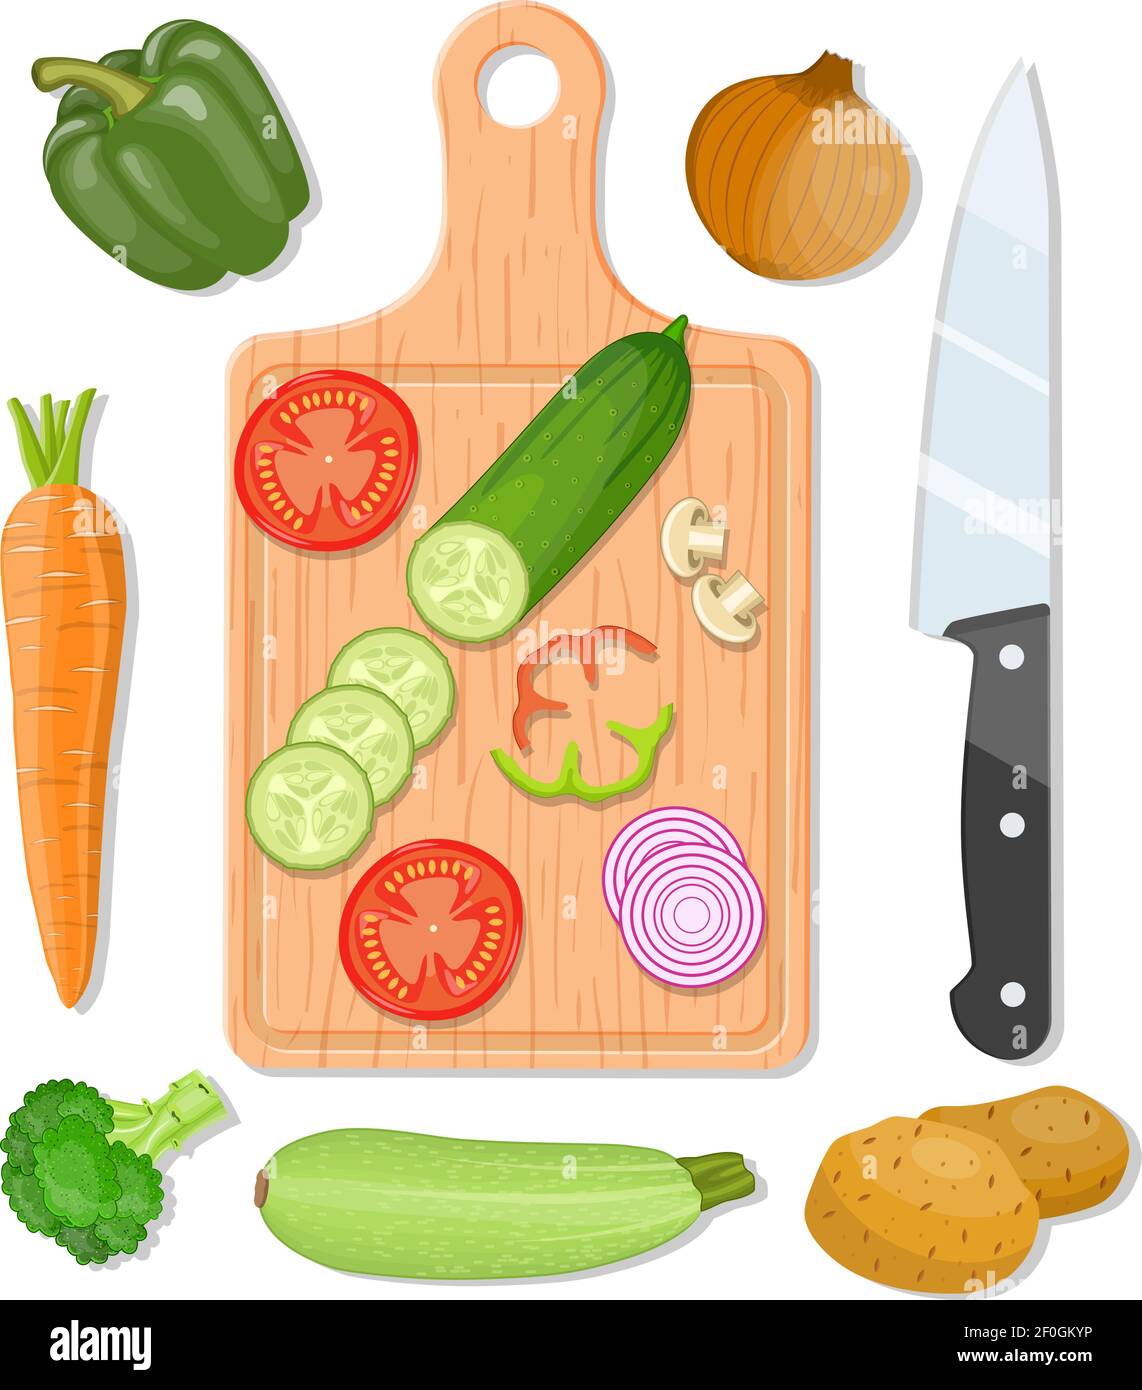 Picar tomate en tabla de cortar icono de cocina de dibujos